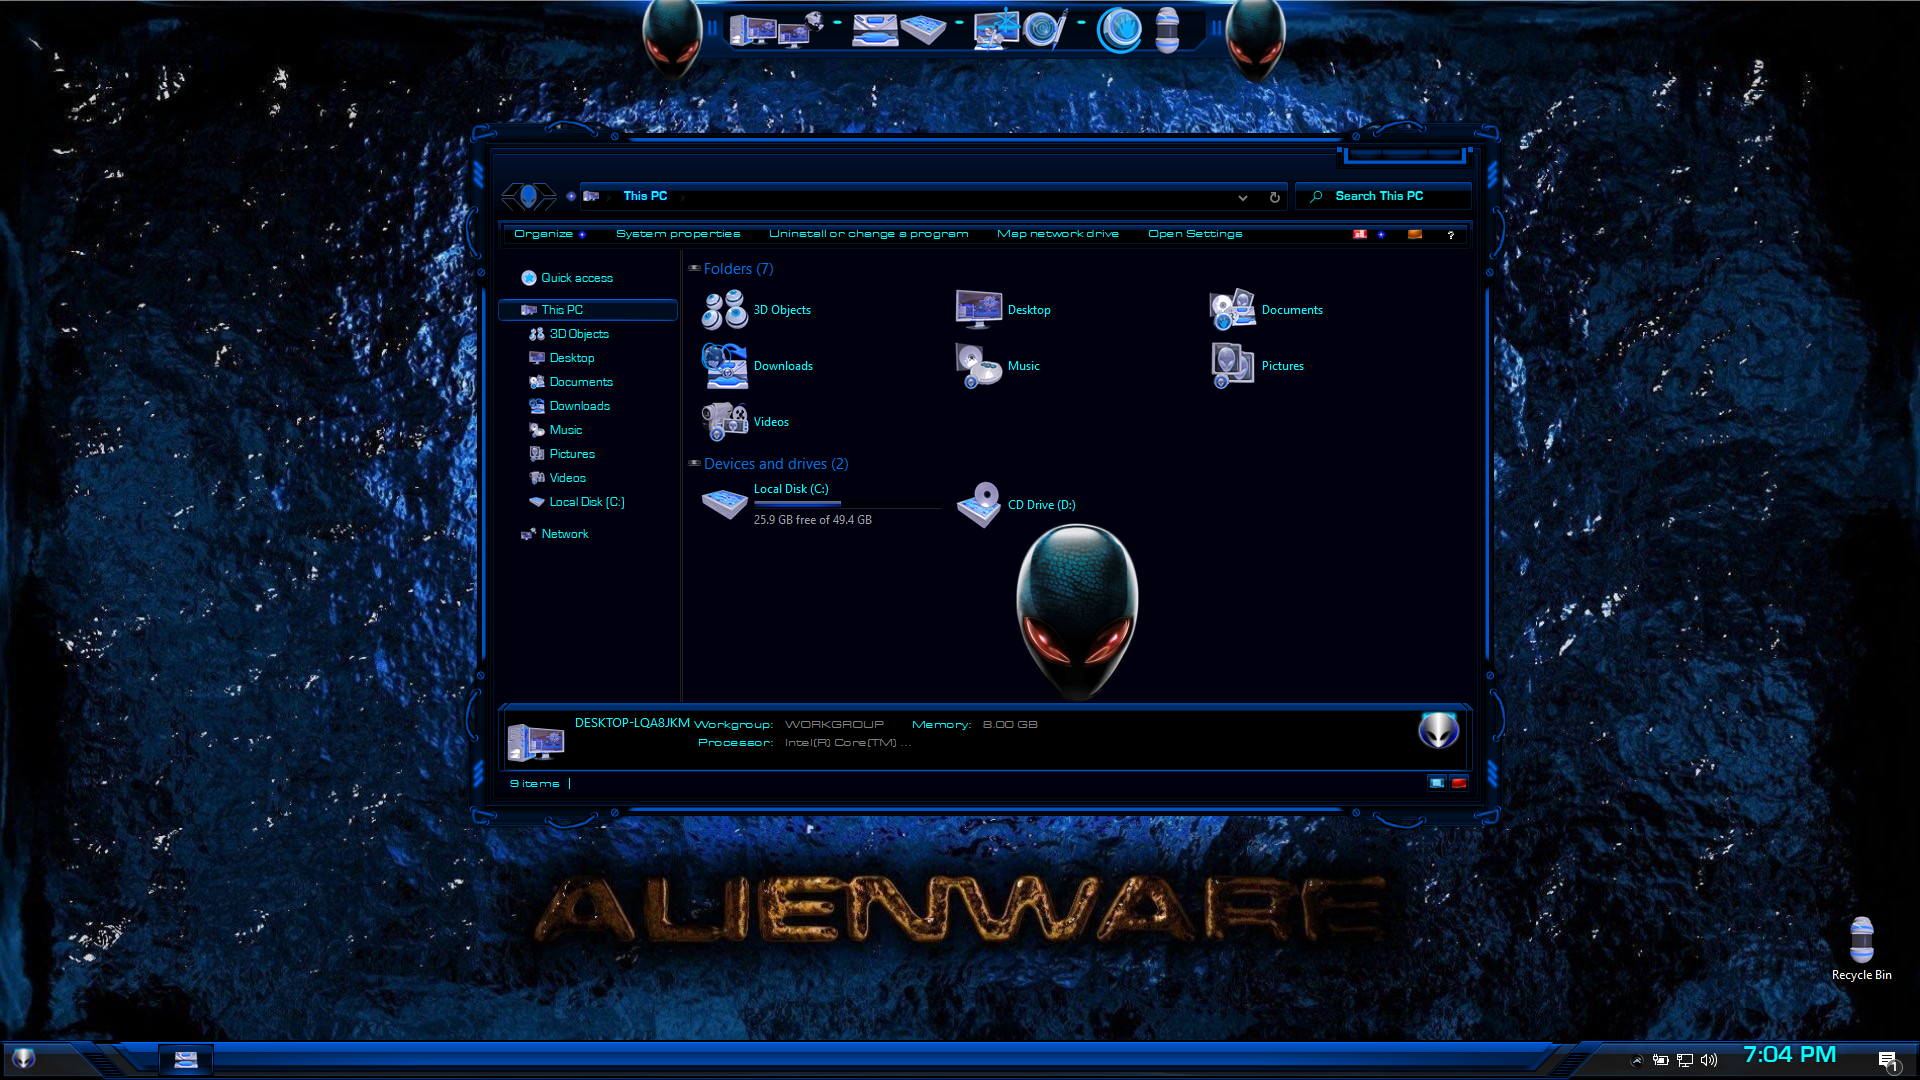 Alienware Premium SkinPack for Windows 10